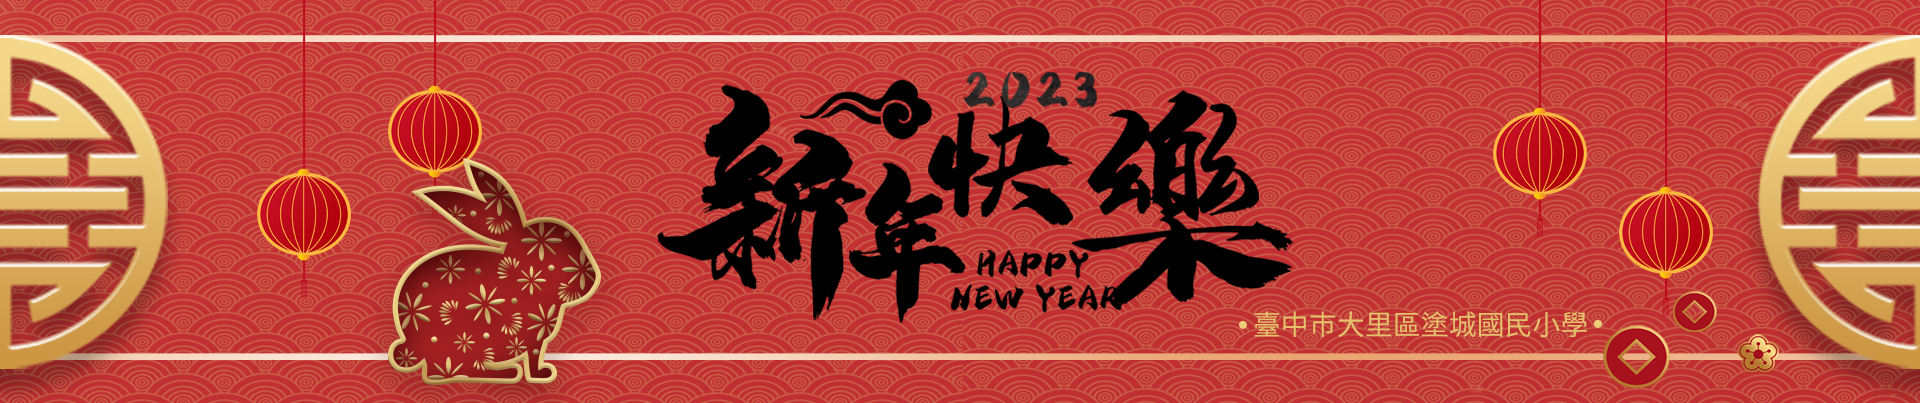 2023happy lunar new year